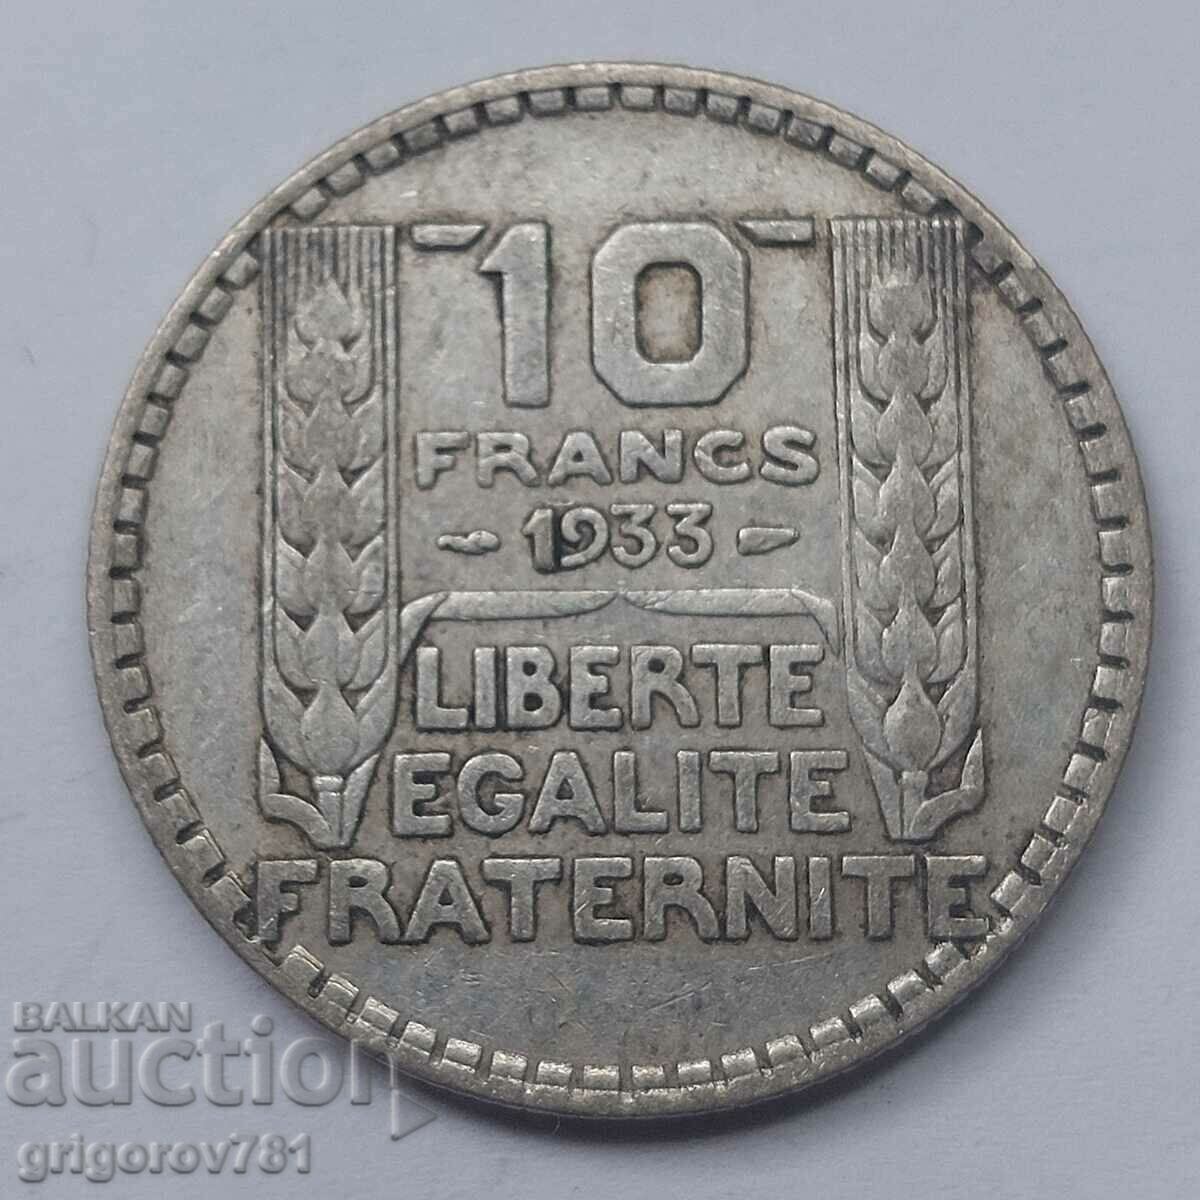 10 Φράγκα Ασήμι Γαλλία 1933 - Ασημένιο νόμισμα #17